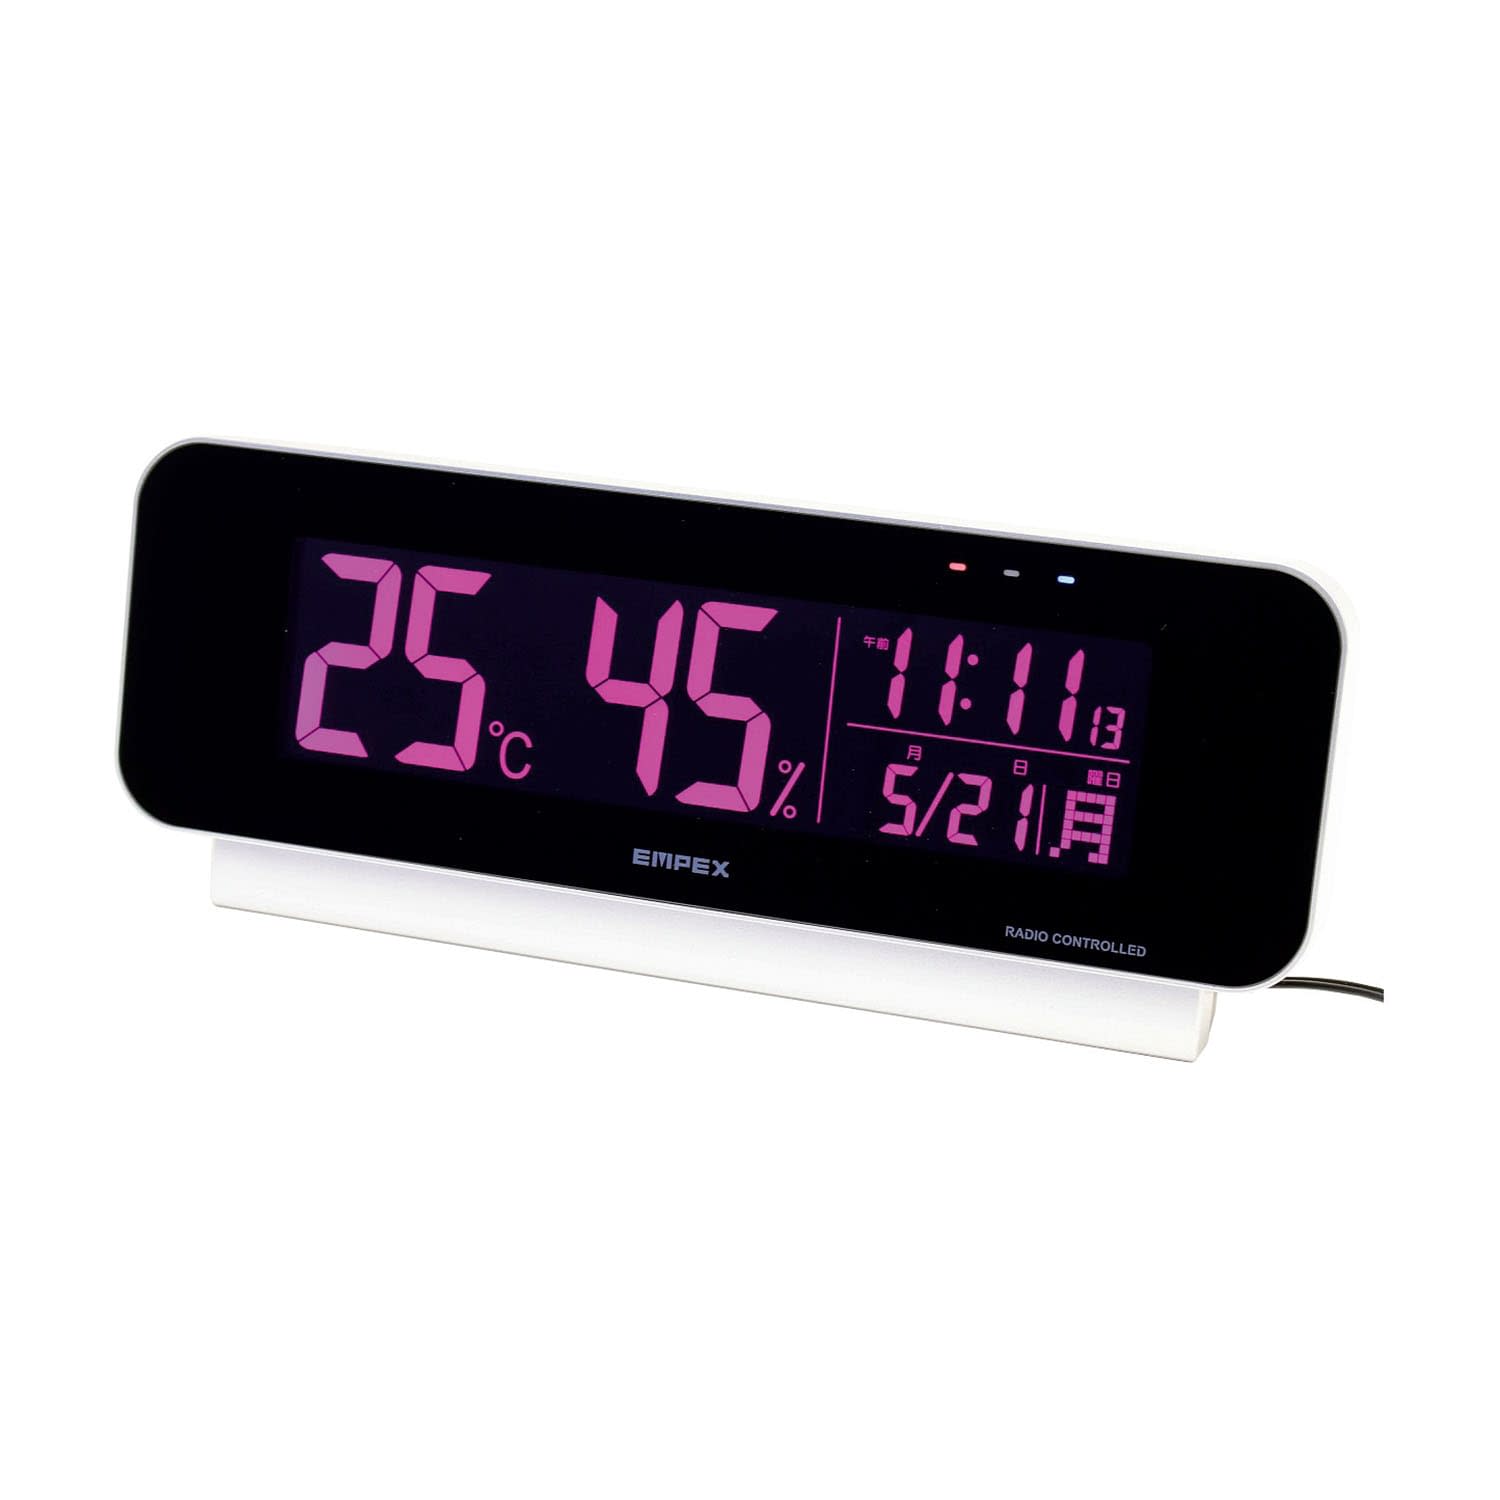 (24-7206-00)電波時計付デジタル温湿度計TD-8262 ﾃﾞﾝﾊﾟﾄﾞｹｲﾂｷﾃﾞｼﾞﾀﾙｵﾝｼ(エンペックス気象計)【1個単位】【2019年カタログ商品】